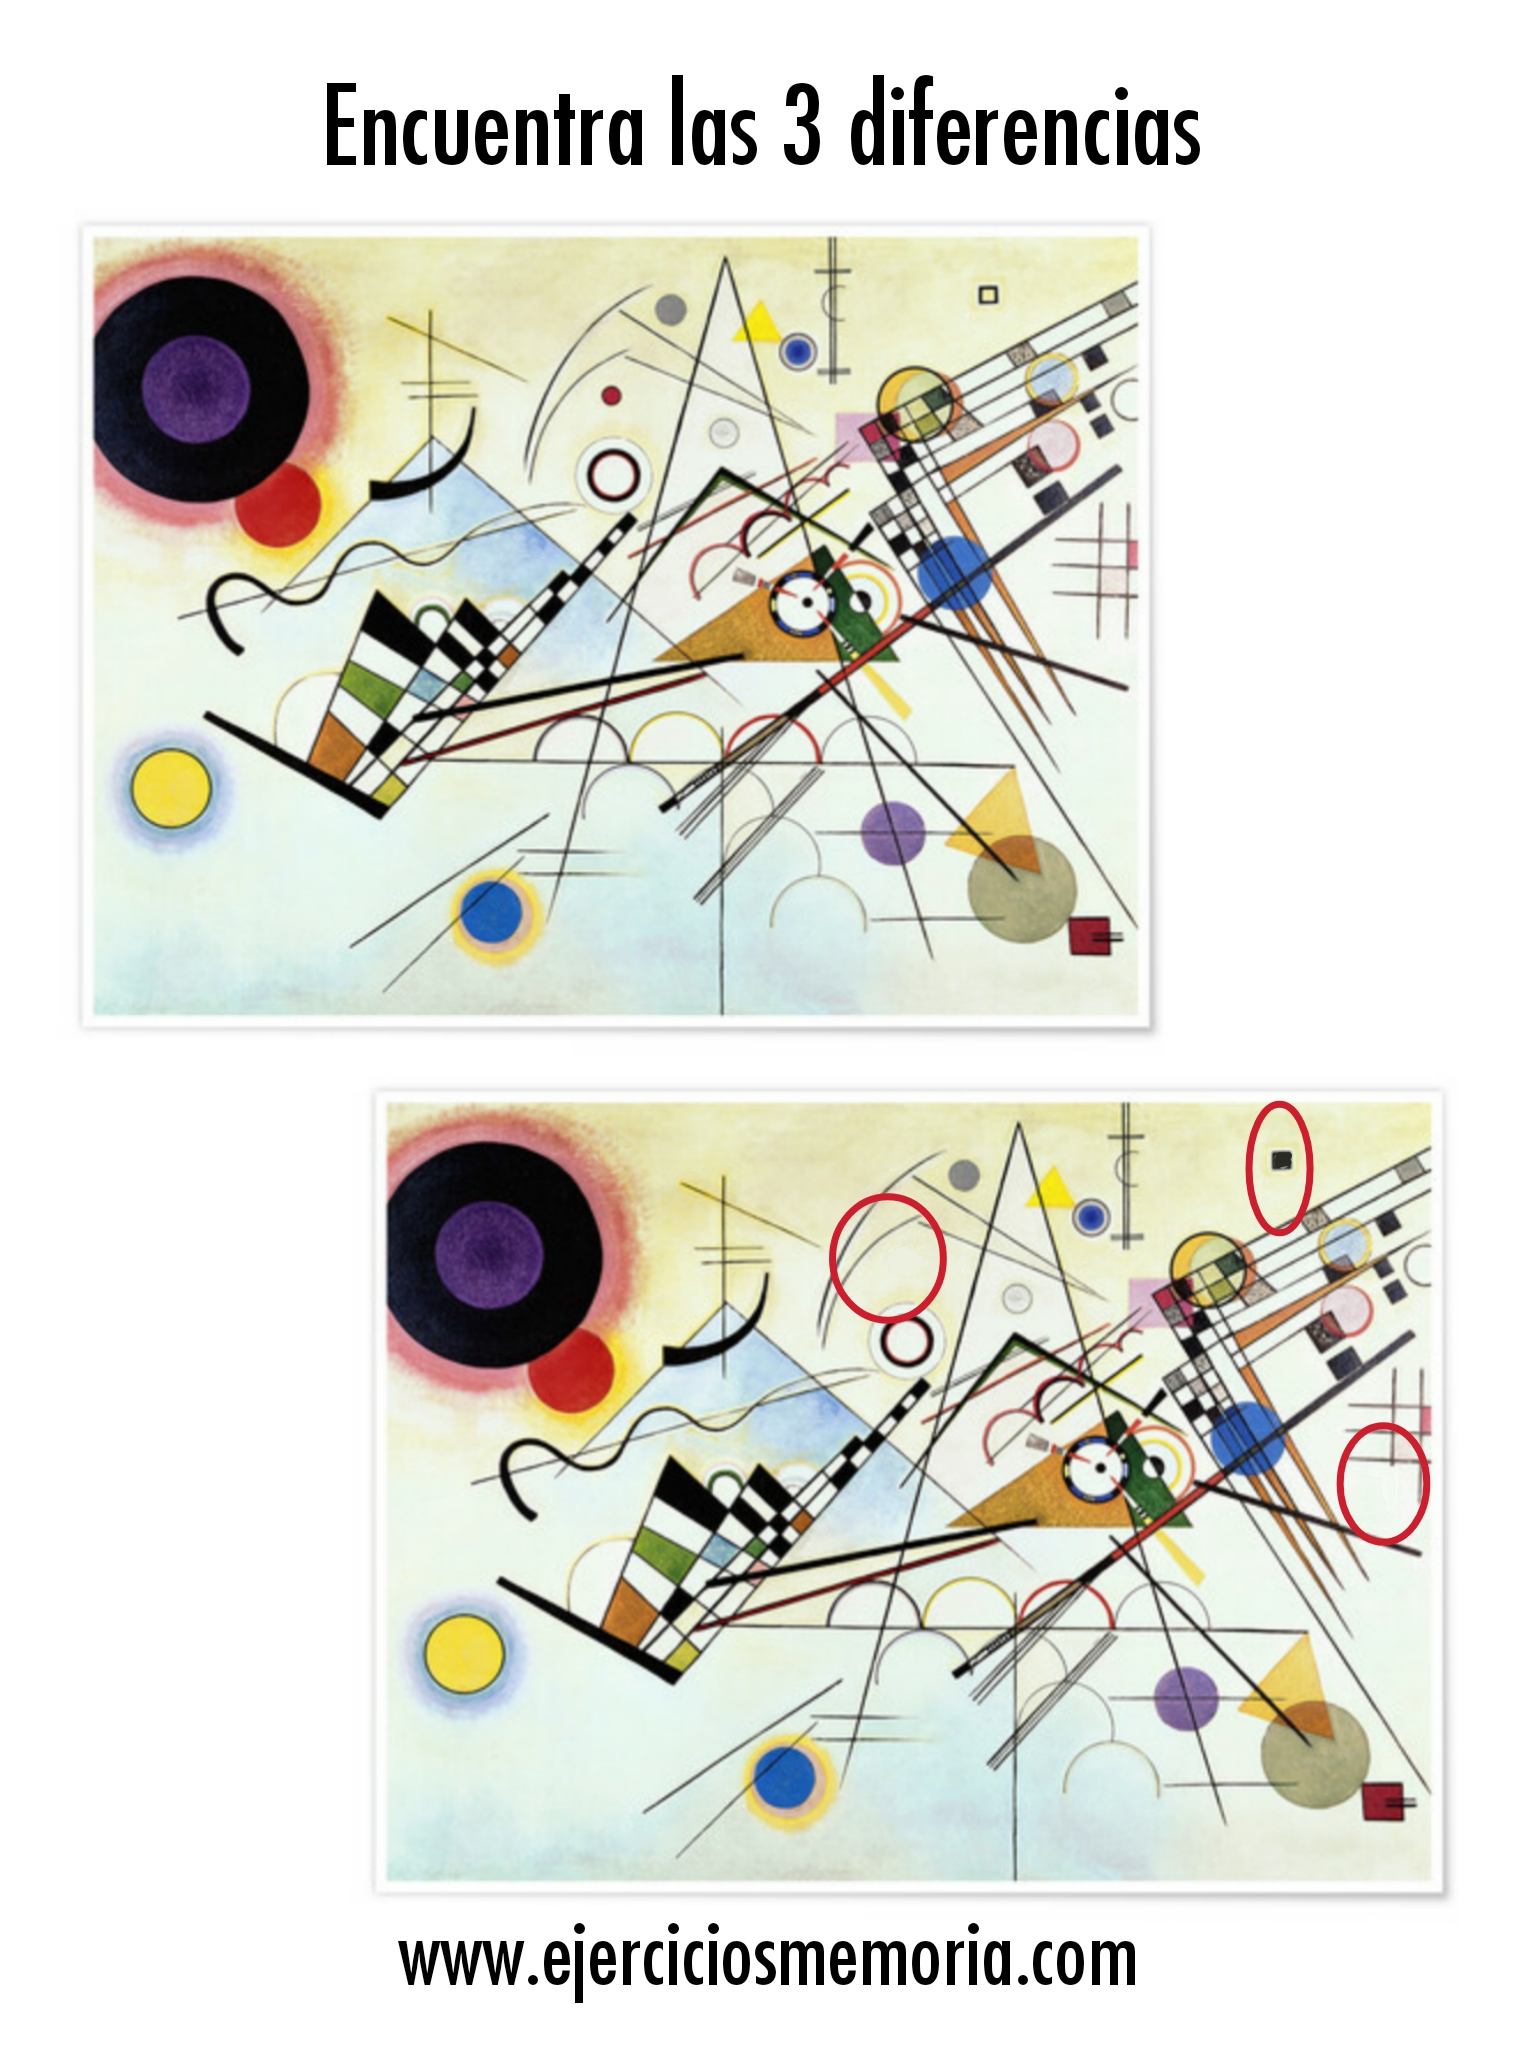 Solución al ejercicio: Encuentra las 3 diferencias en este cuadro de Kandinsky